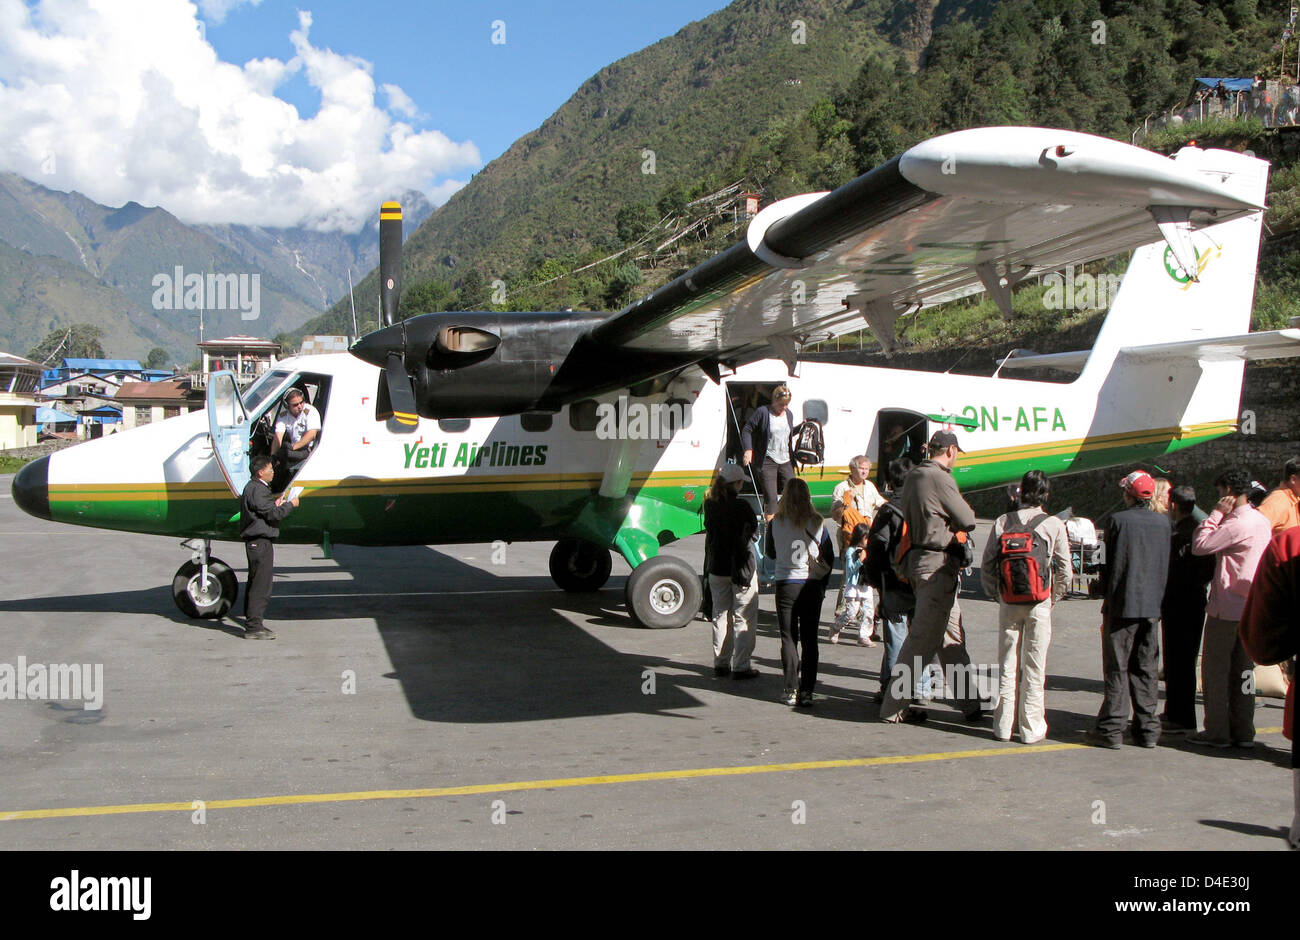 (FILE) - Il file immagine datata ottobre 2007 mostra i turisti dello sbarco di un aeromobile del tipo Twin Otter della Yetio le compagnie aeree dopo il suo arrivo sulla pista dell'aeroporto Lukla in Nepal. Un elica piano dello stesso tipo si è schiantato al Tenzing-Hillary-Airport in Himalaya in 3.000 metri di altezza su 08 Ottobre 2008. 18 persone sono morte in un incidente, tra di loro vi erano 12 Tedeschi. Th Foto Stock